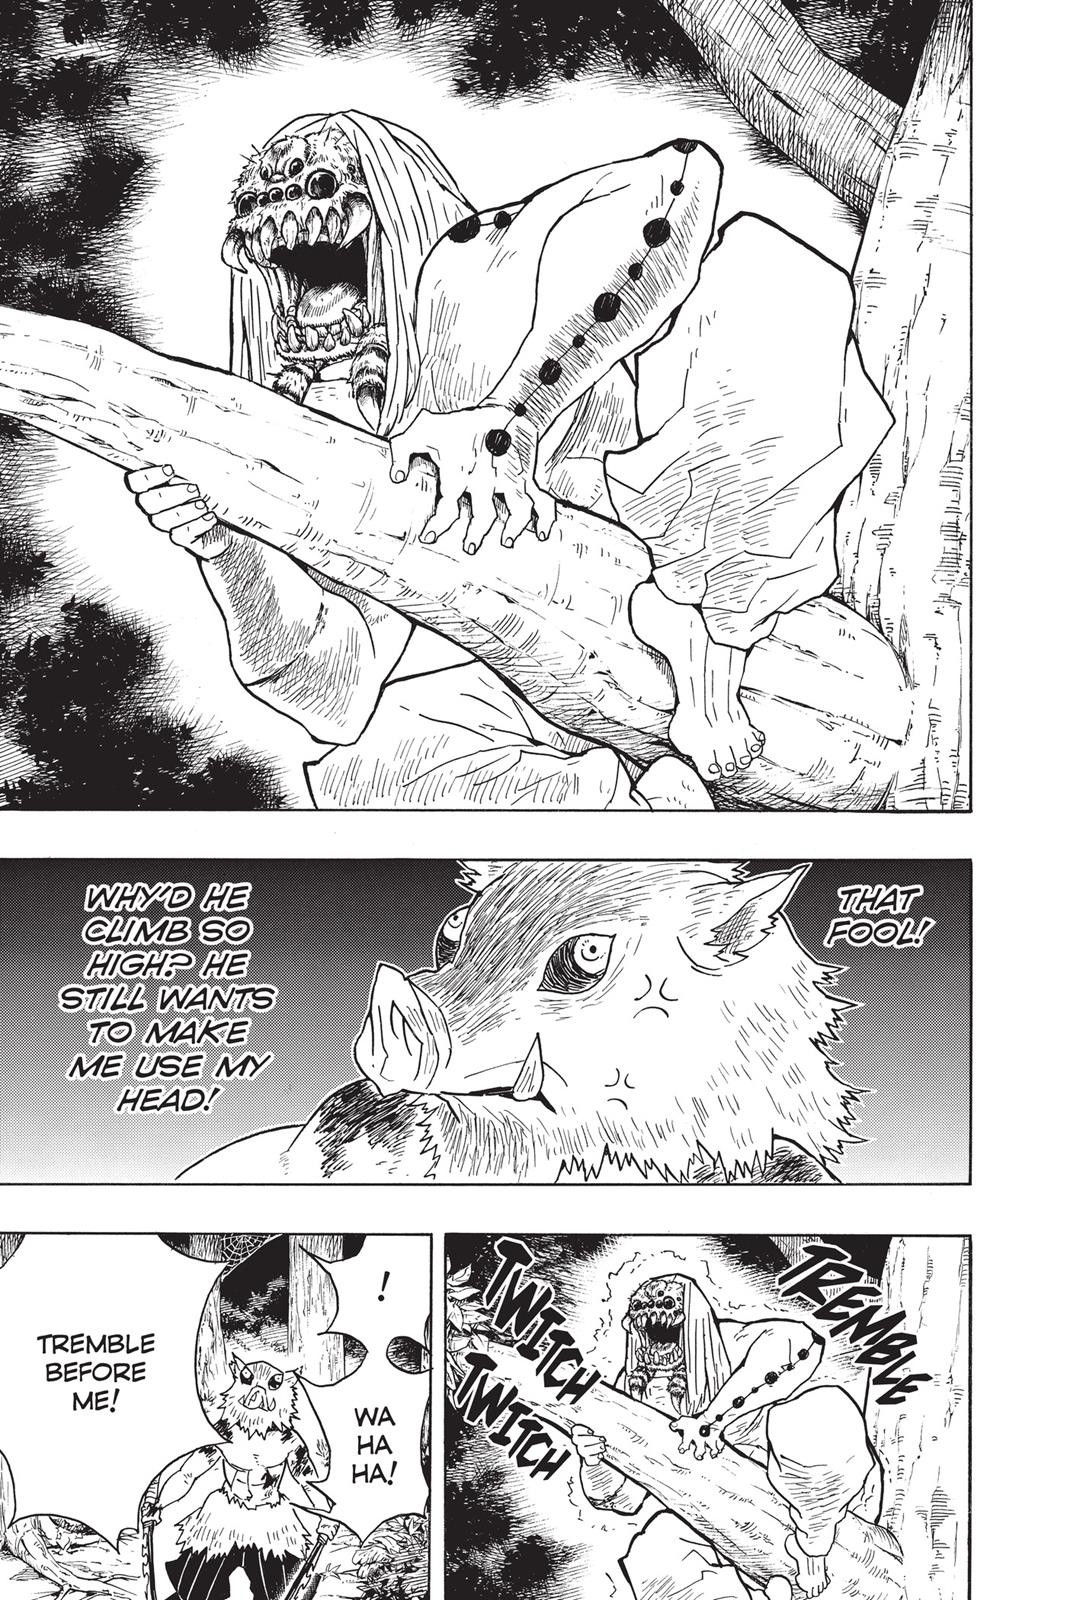 Demon Slayer Manga Manga Chapter - 36 - image 9